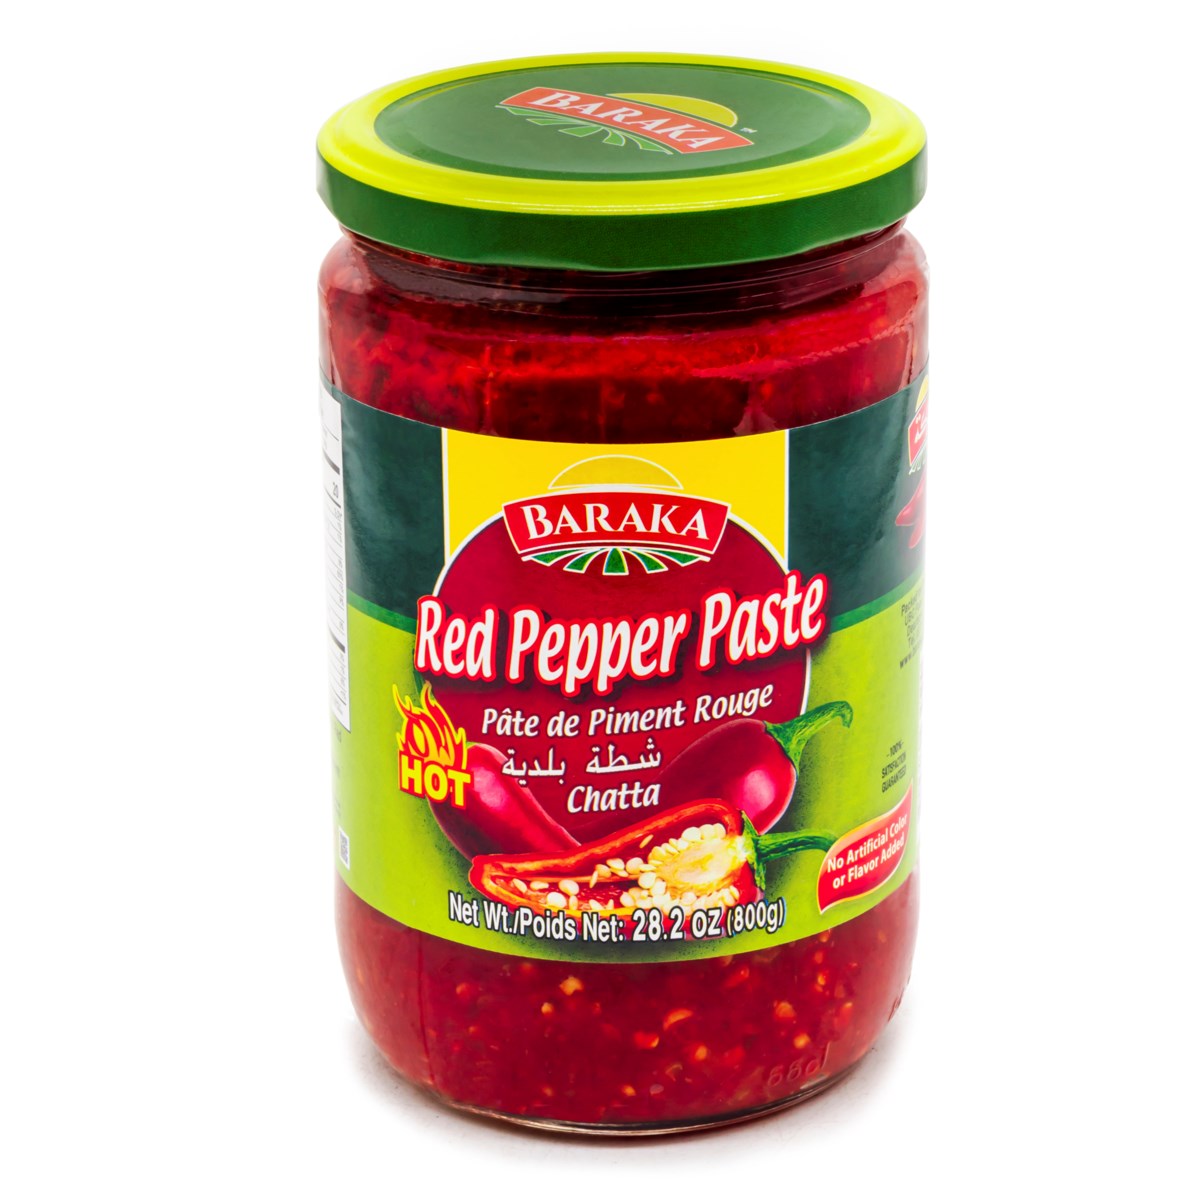 Red Pepper Paste (Shatta) "Baraka" 800g x 12